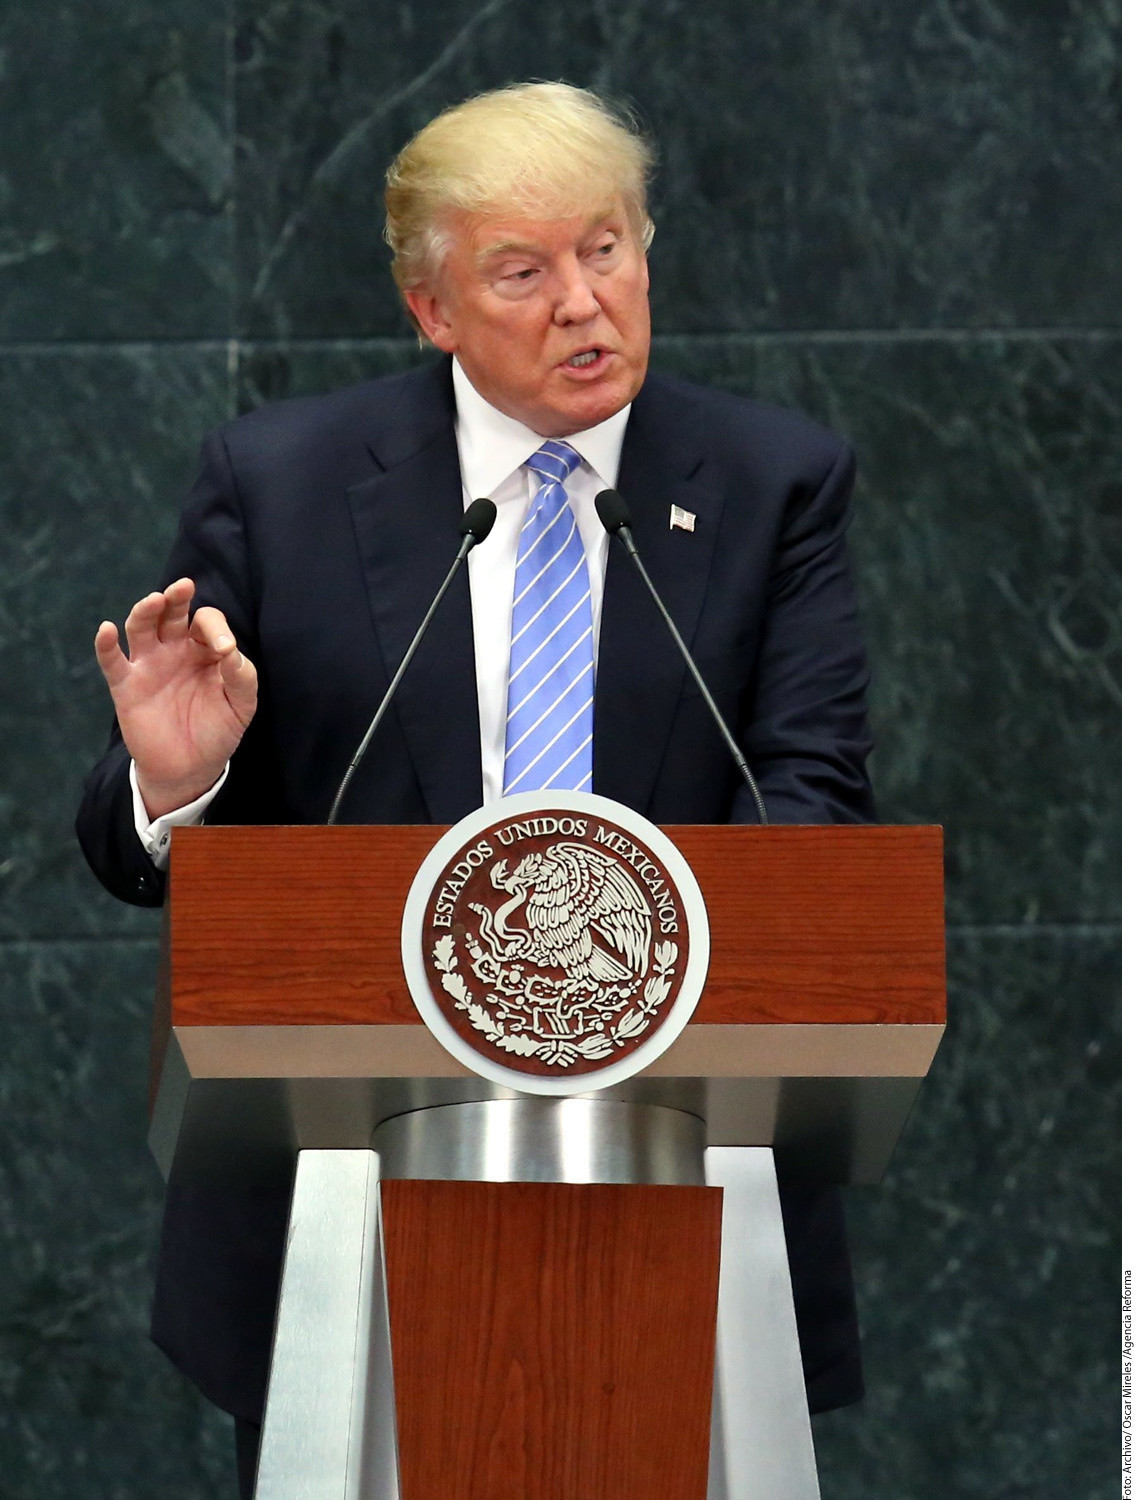 Exigen a Enrique Peña Nieto firmeza y dignidad ante Donald Trump - Hoy Los Angeles